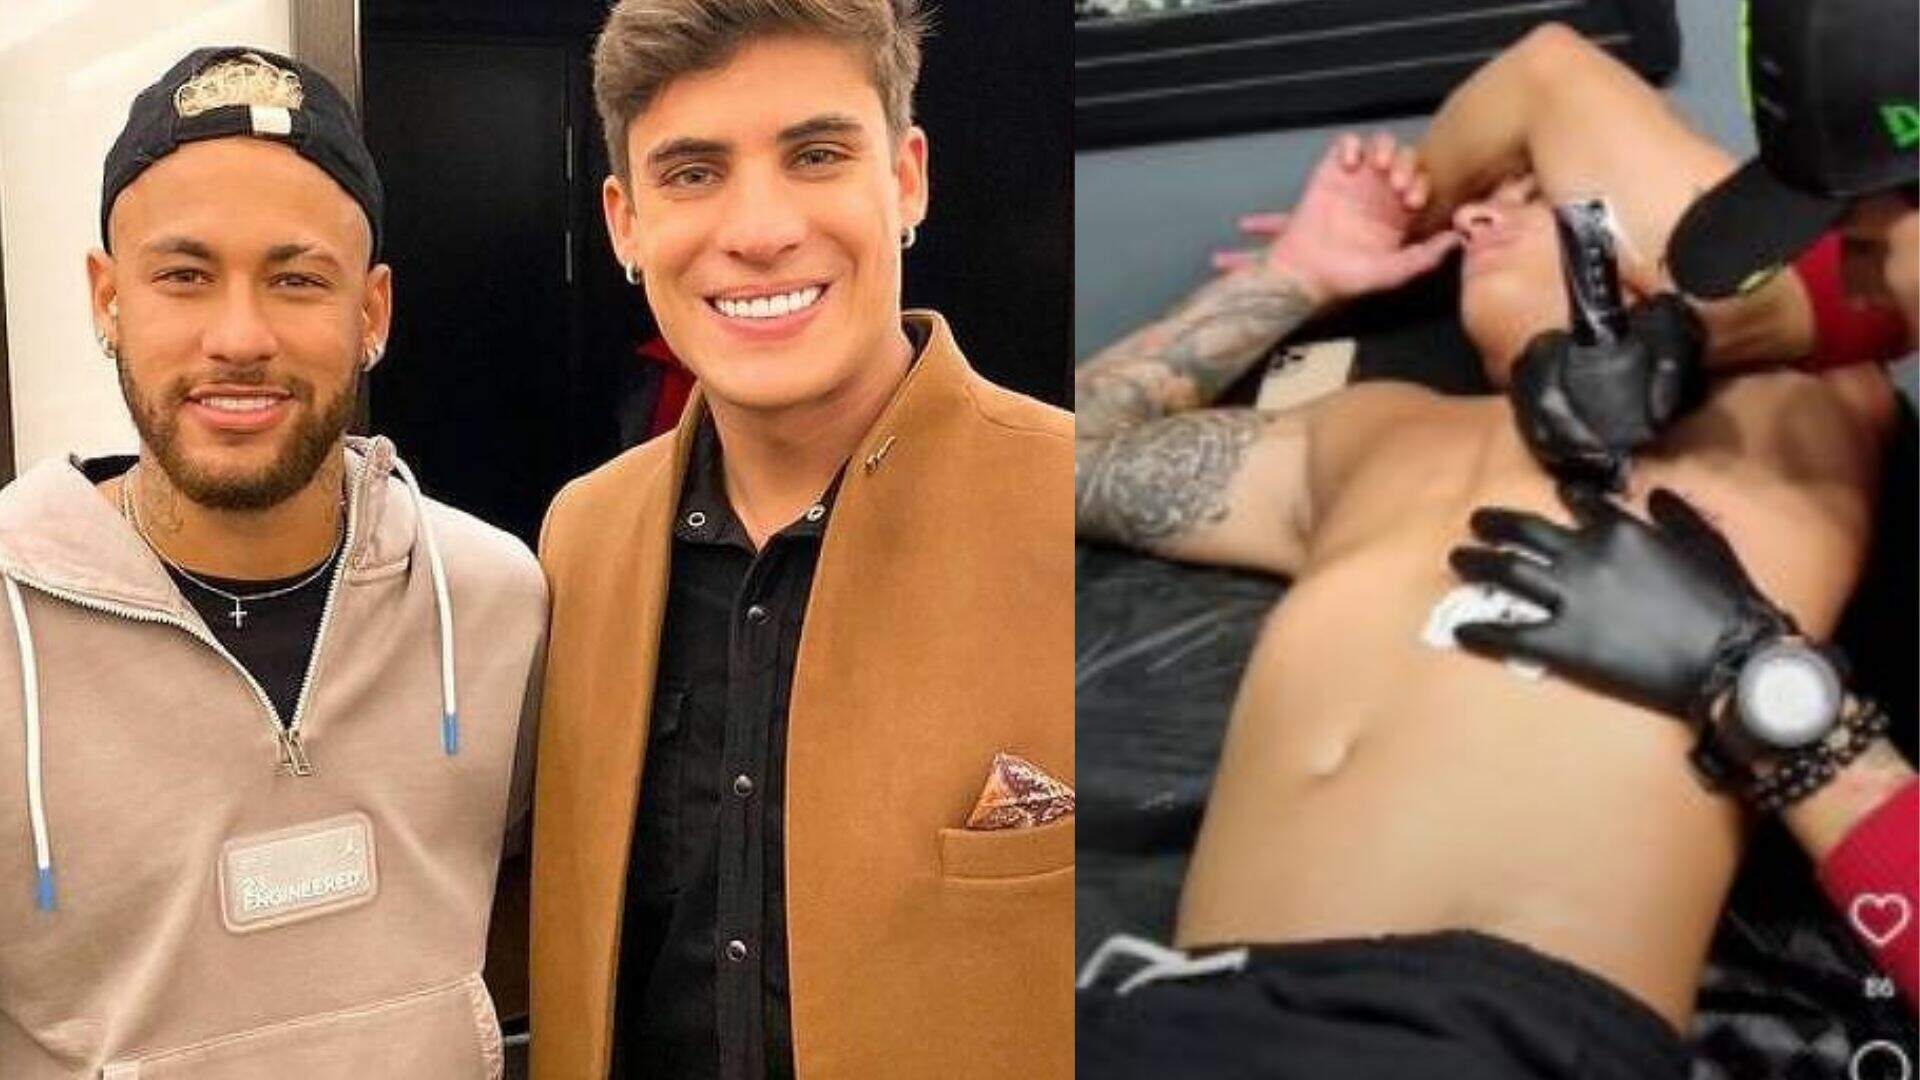 Eternizou! Ex-padrasto de Neymar faz tatuagem e envolve mãe do atleta em desenho inesperado - Metropolitana FM